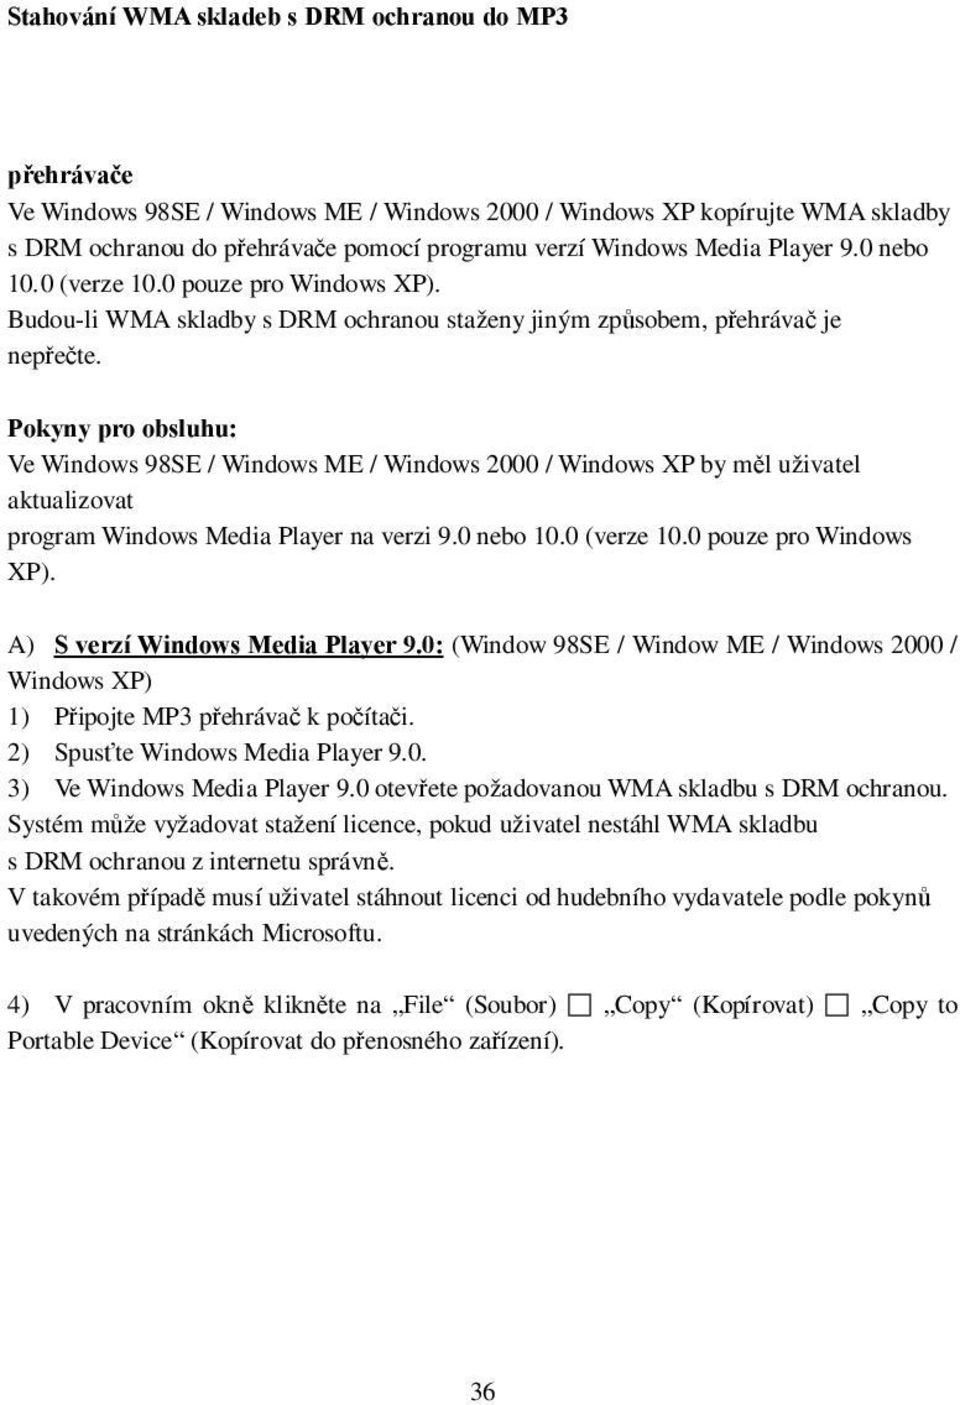 Pokyny pro obsluhu: Ve Windows 98SE / Windows ME / Windows 2000 / Windows XP by měl uživatel aktualizovat program Windows Media Player na verzi 9.0 nebo 10.0 (verze 10.0 pouze pro Windows XP).